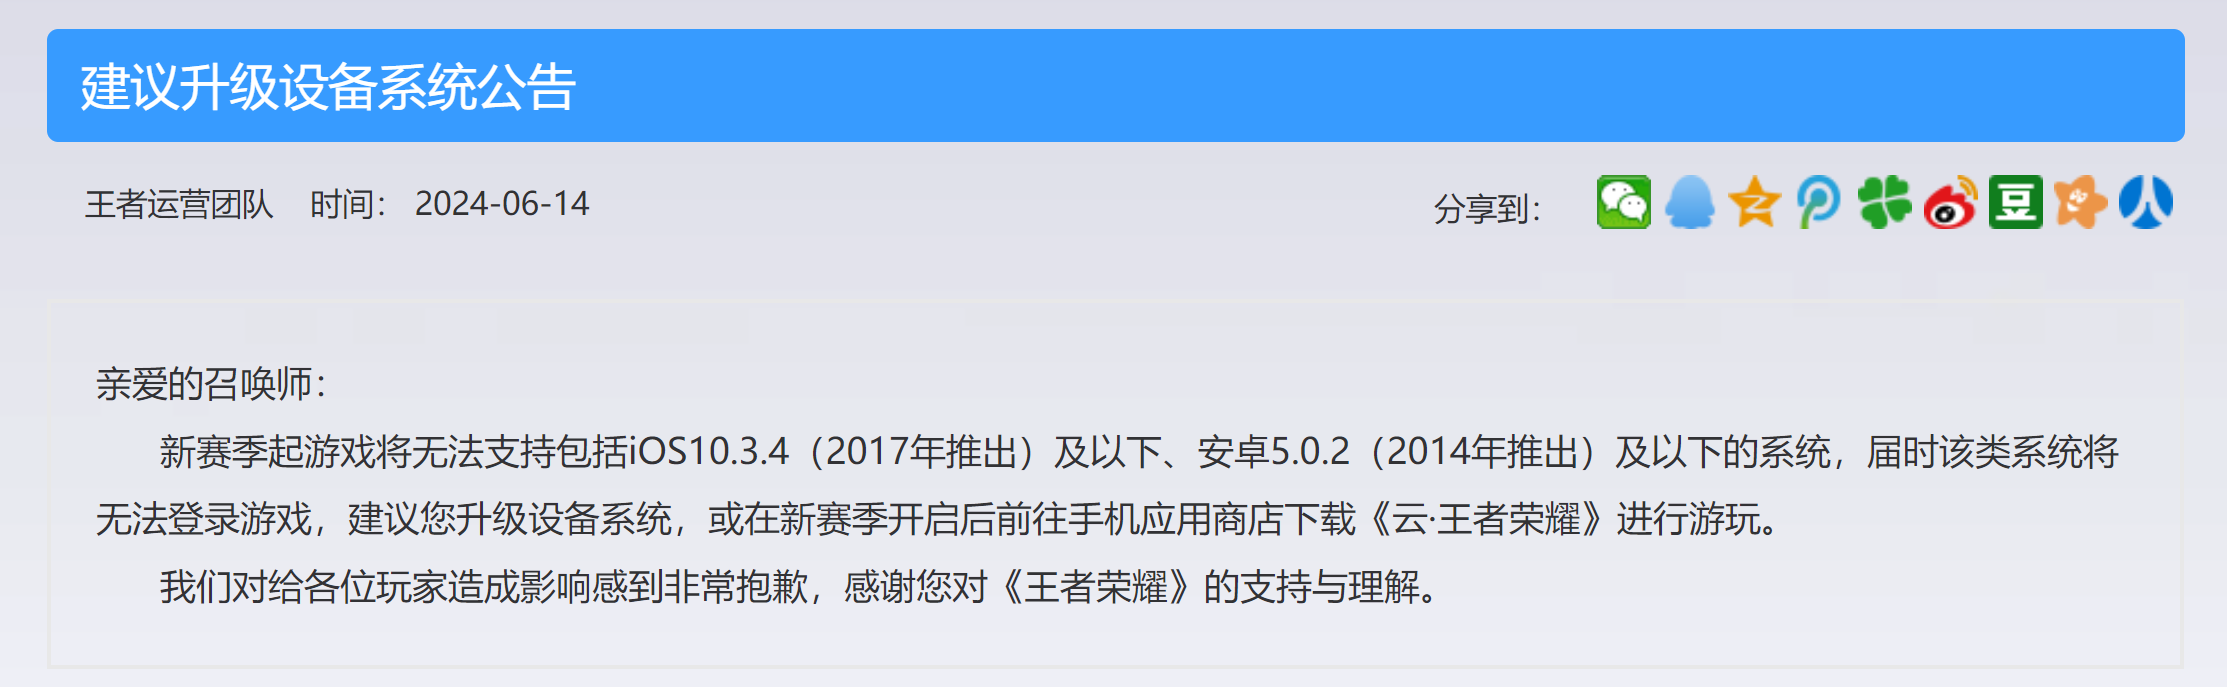 《王者荣耀》S36 赛季不支持 iOS10.3.4 / 安卓 5.0.2 及以下系统